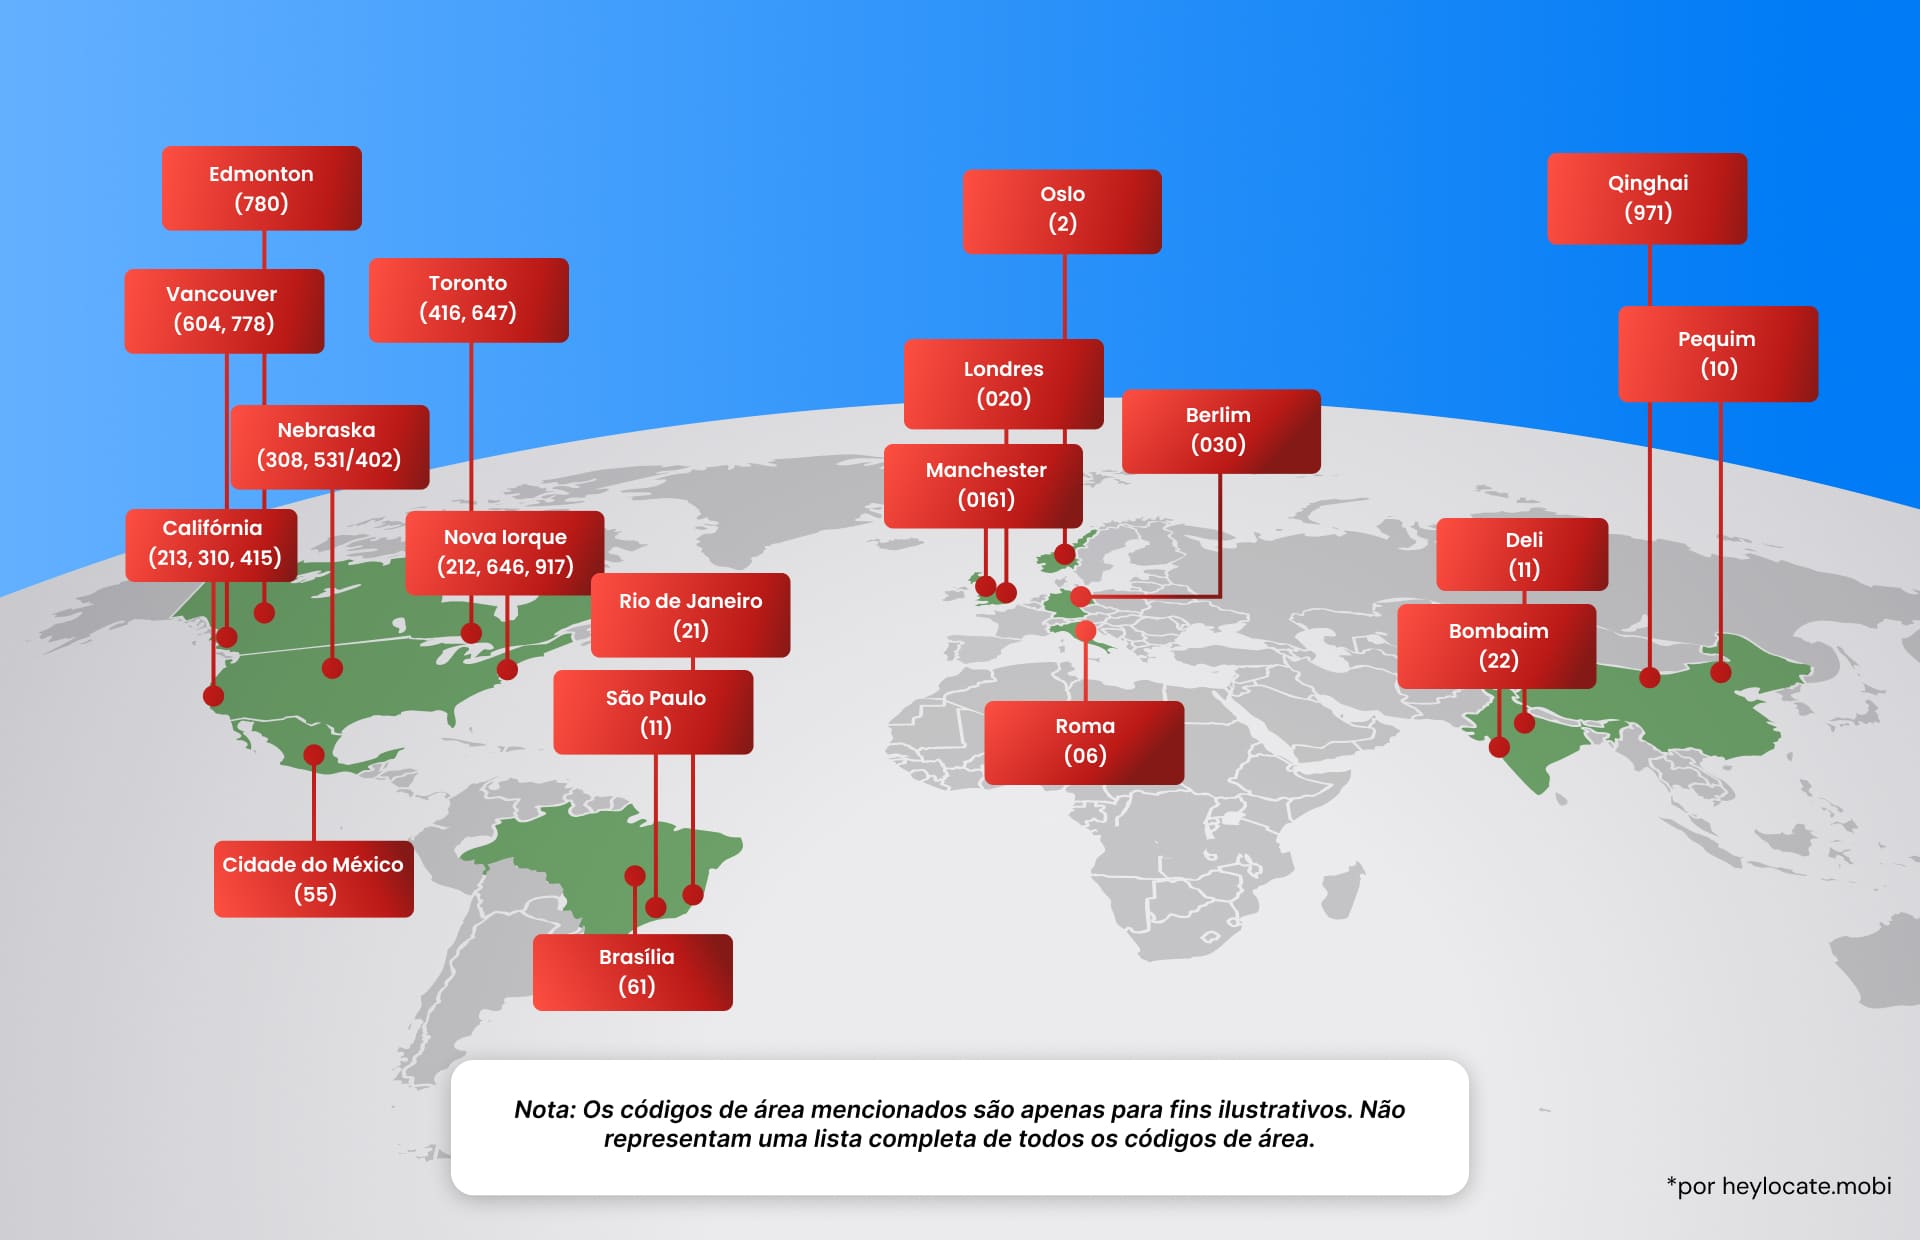 Mapa mundial ilustrativo destacando vários códigos de área globais para cidades e regiões, explicando o conceito de um código de área